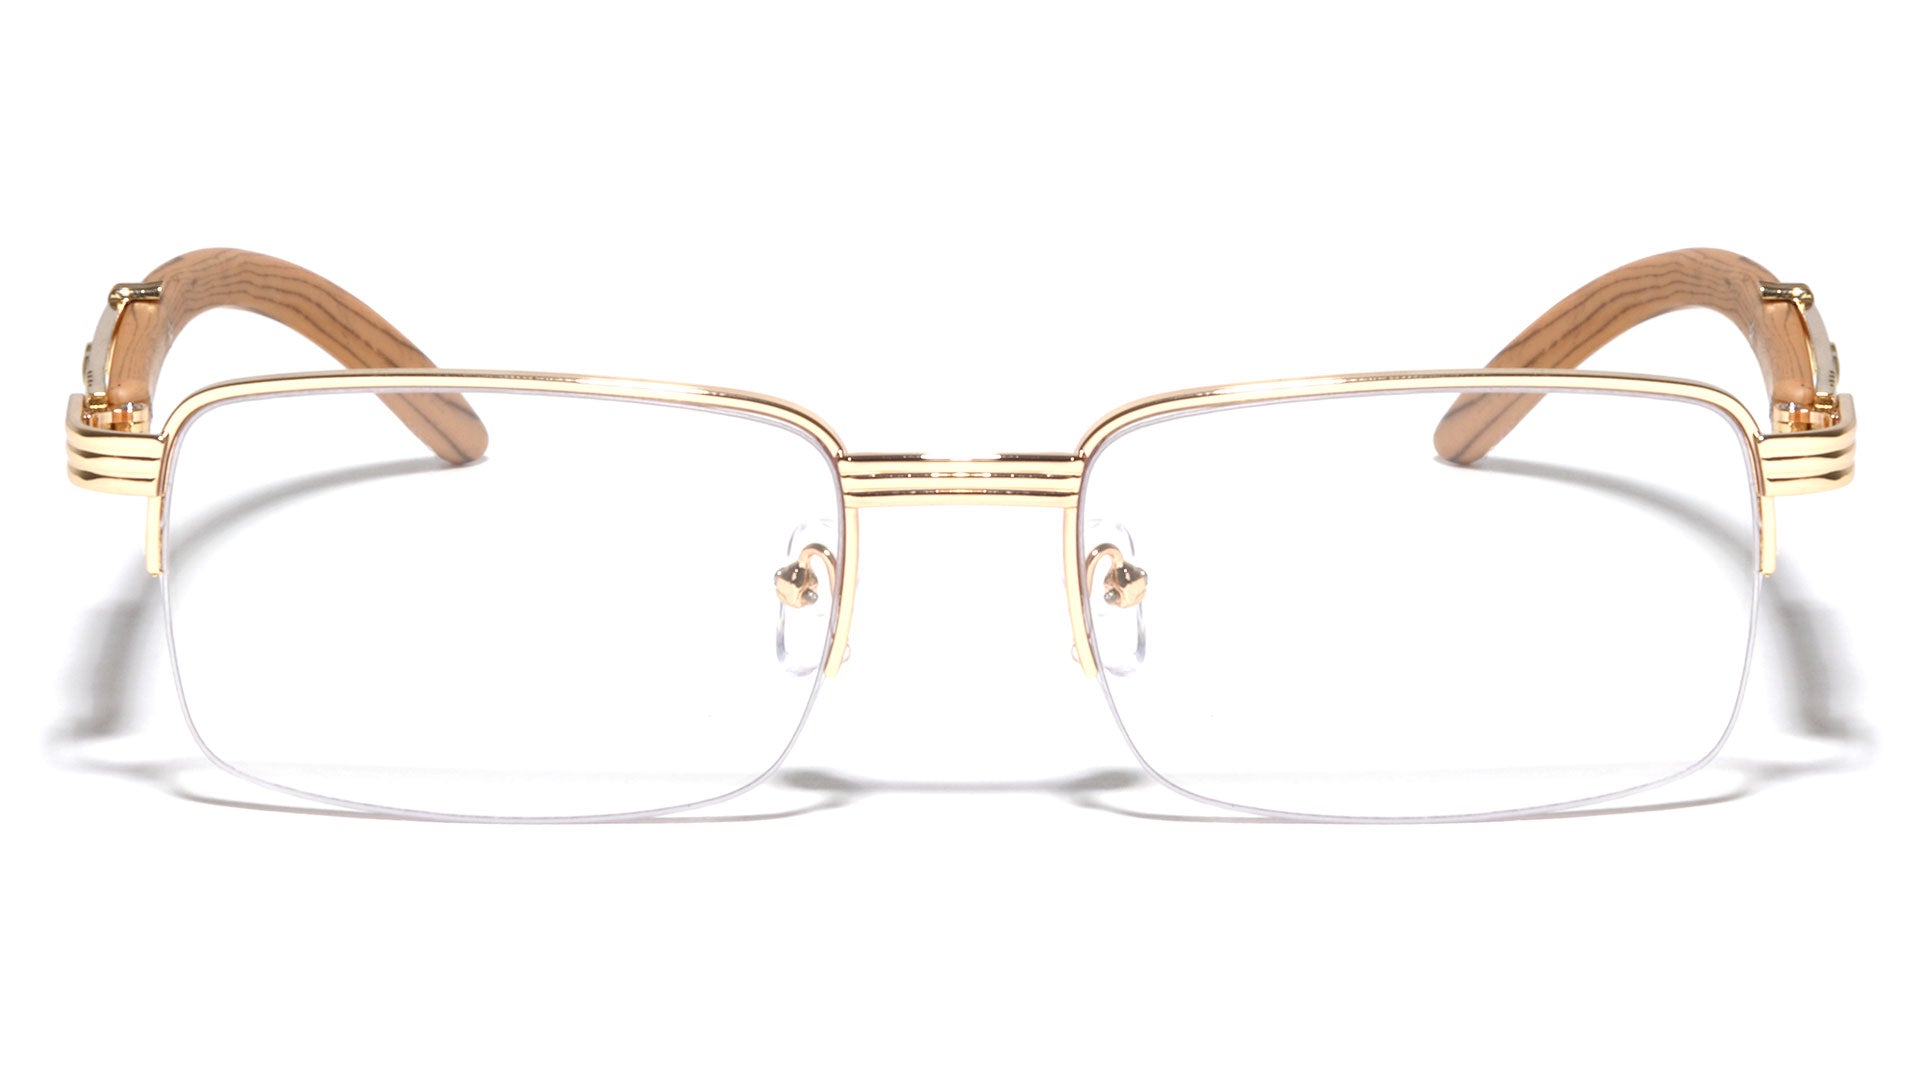 M4003-CLR Wholesale Fashion Clear Lens Glasses - Frontier Fashion, Inc.